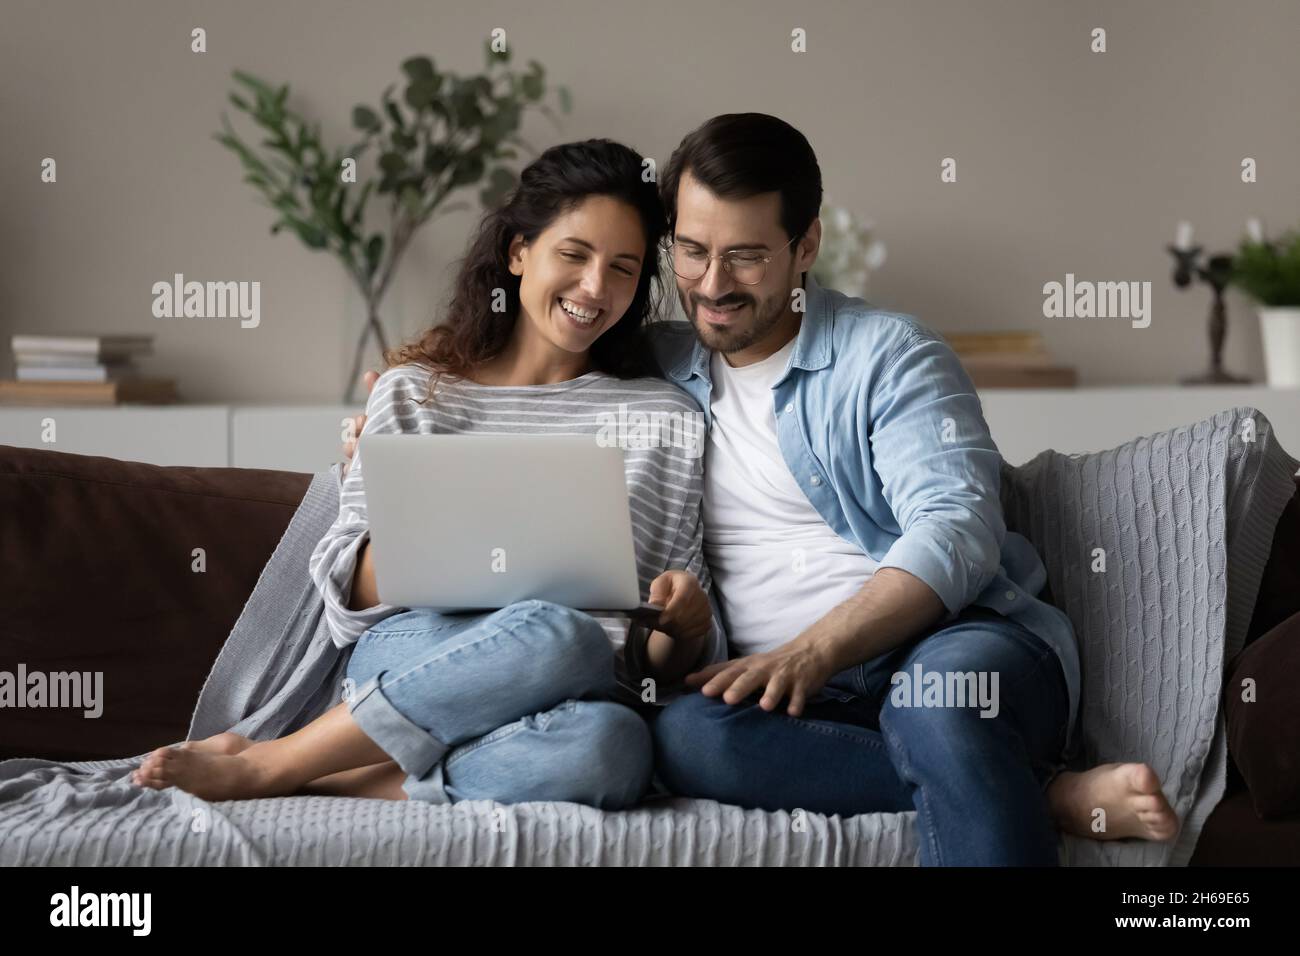 Un jeune couple heureux utilisant un ordinateur portable, se reposant sur un canapé ensemble Banque D'Images